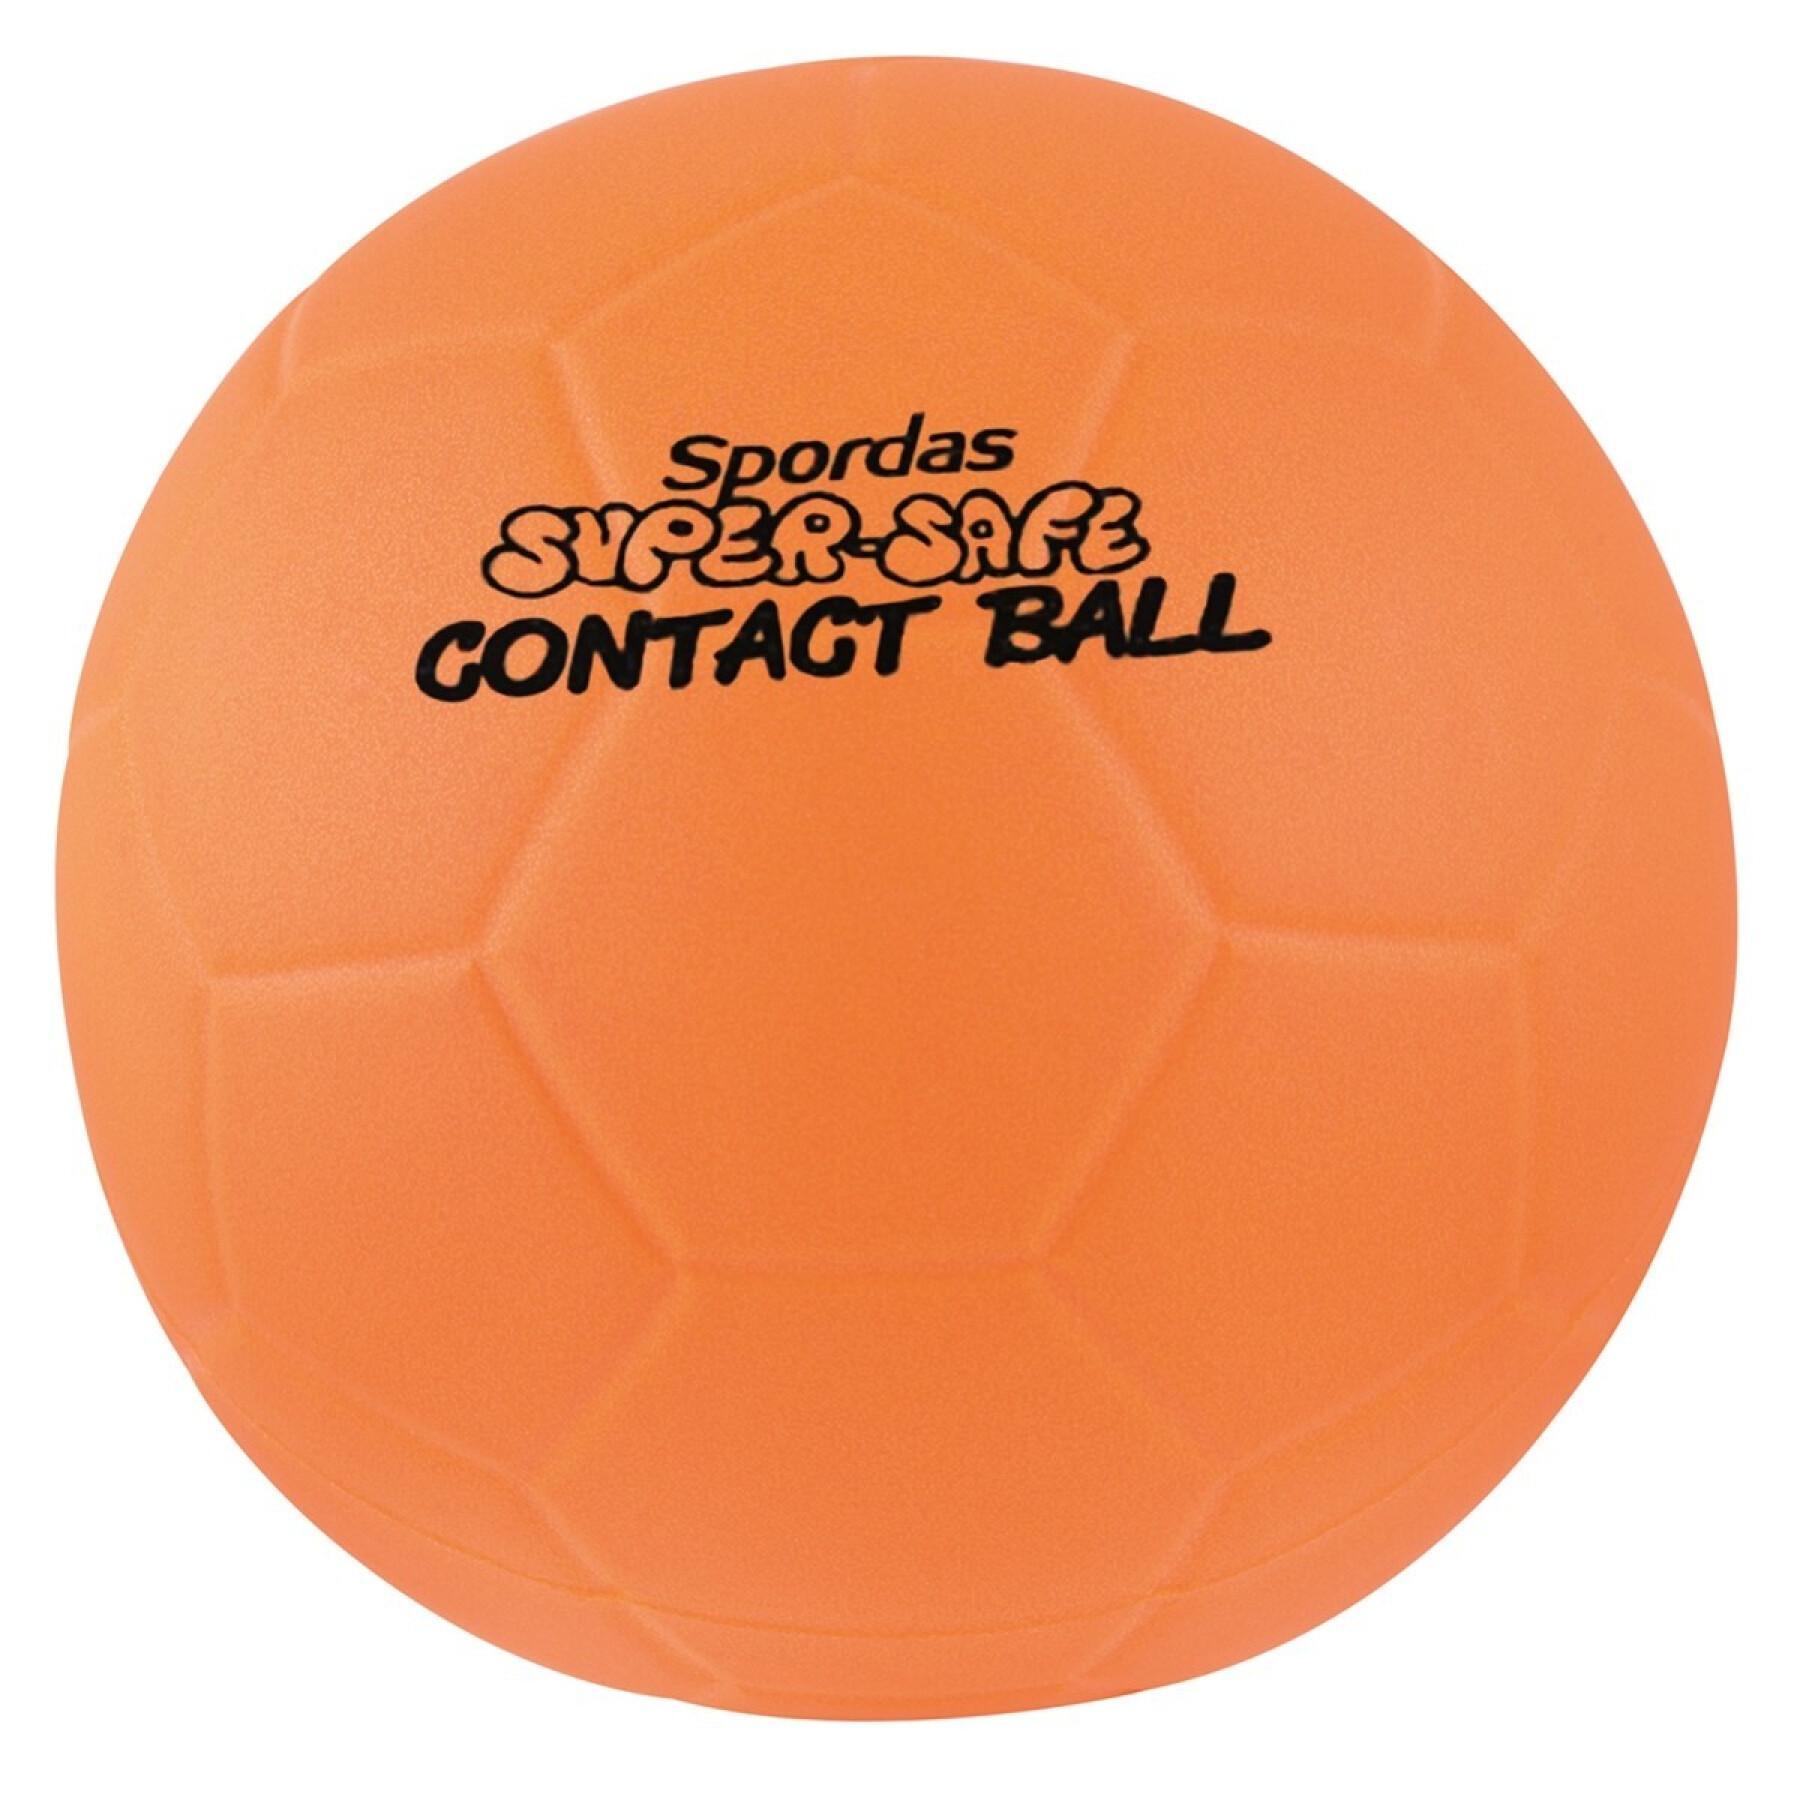 Ball Spordas SuperSafe Contact